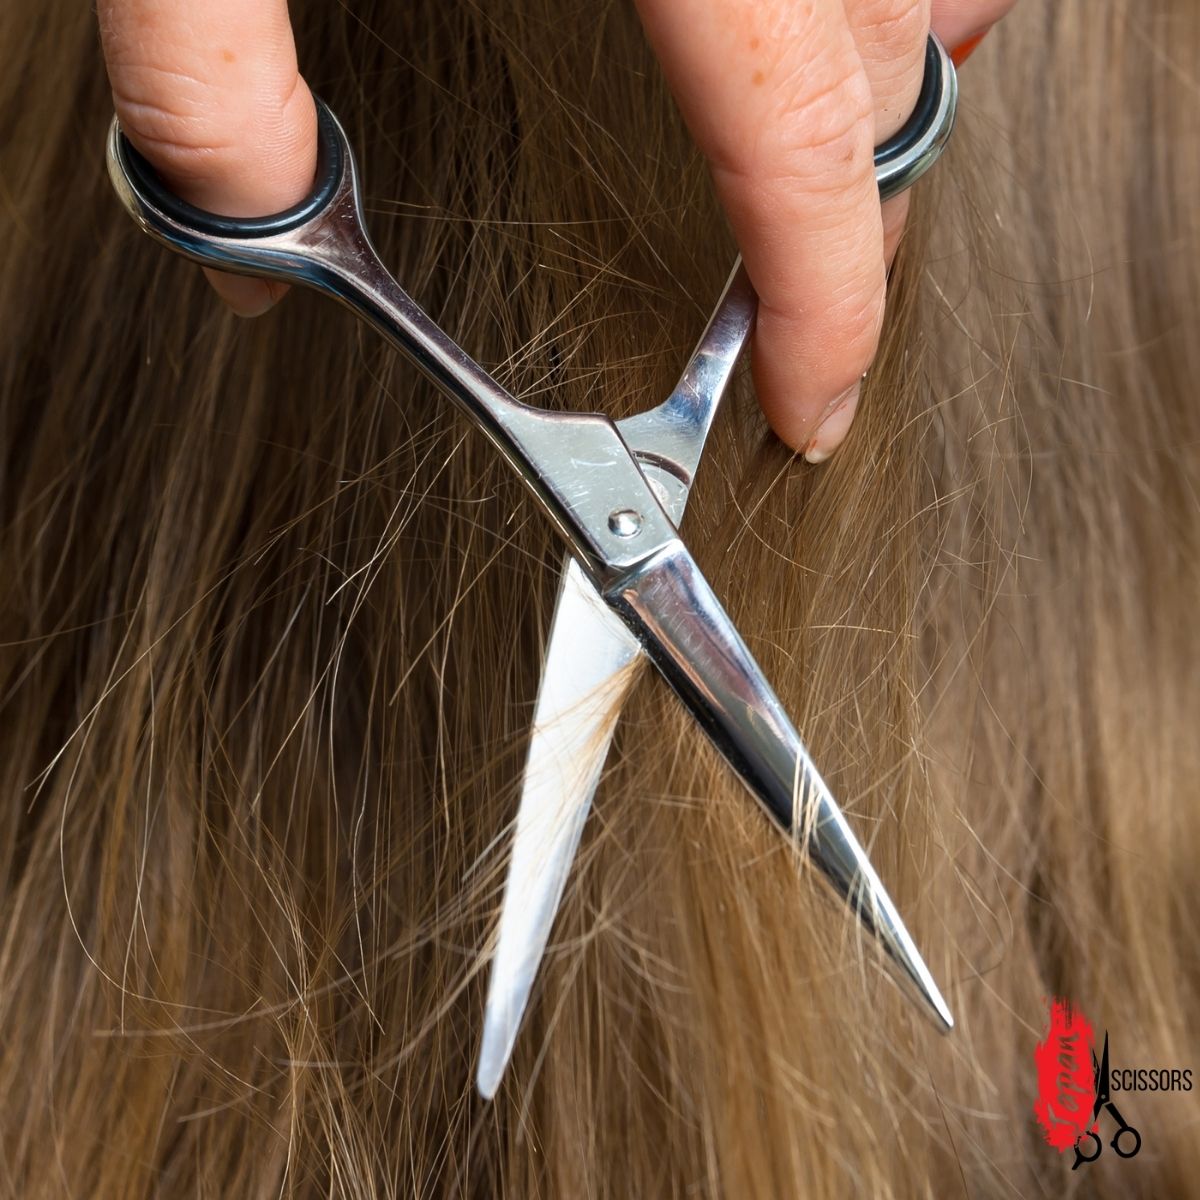 The hair cutting scissor blades closeup